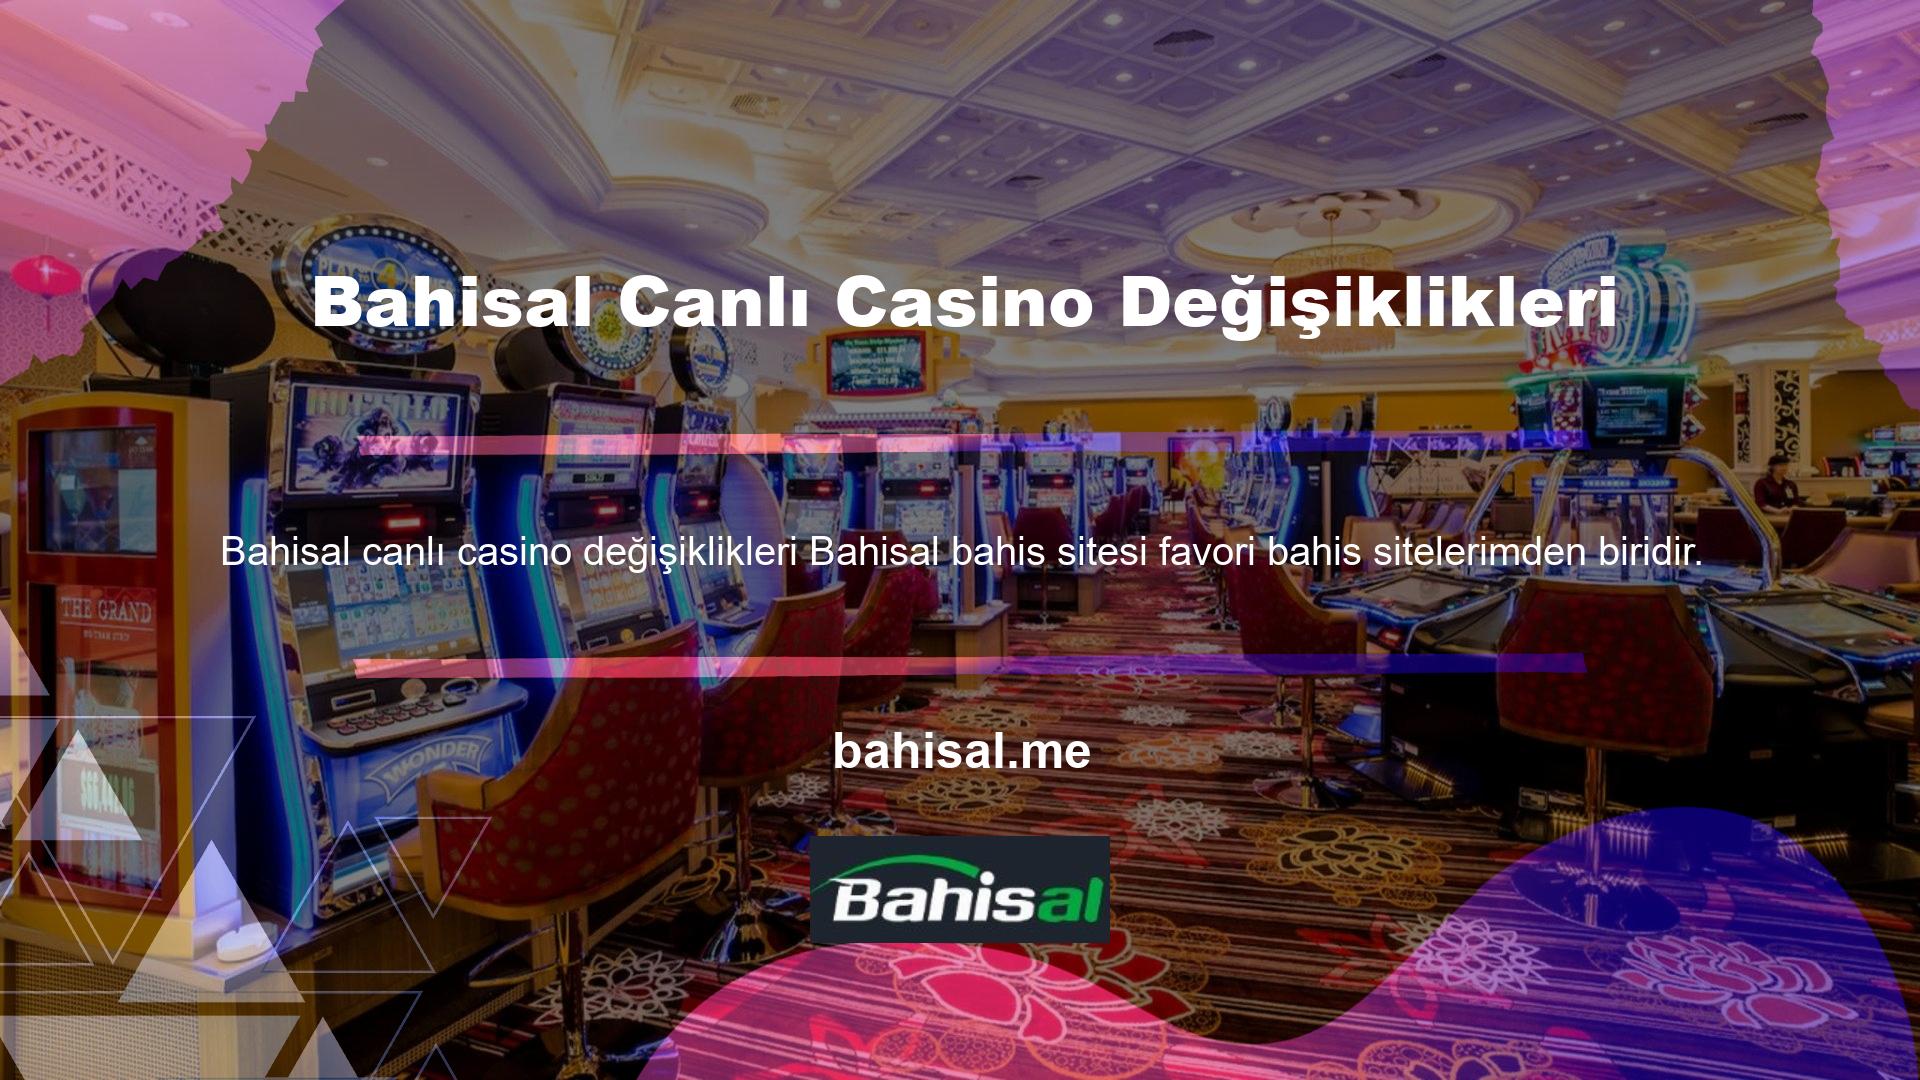 Bahisal canlı casino değişiklikleri, canlı casino oyun sektöründeki bahis tutkunlarının ilgisini çekiyor